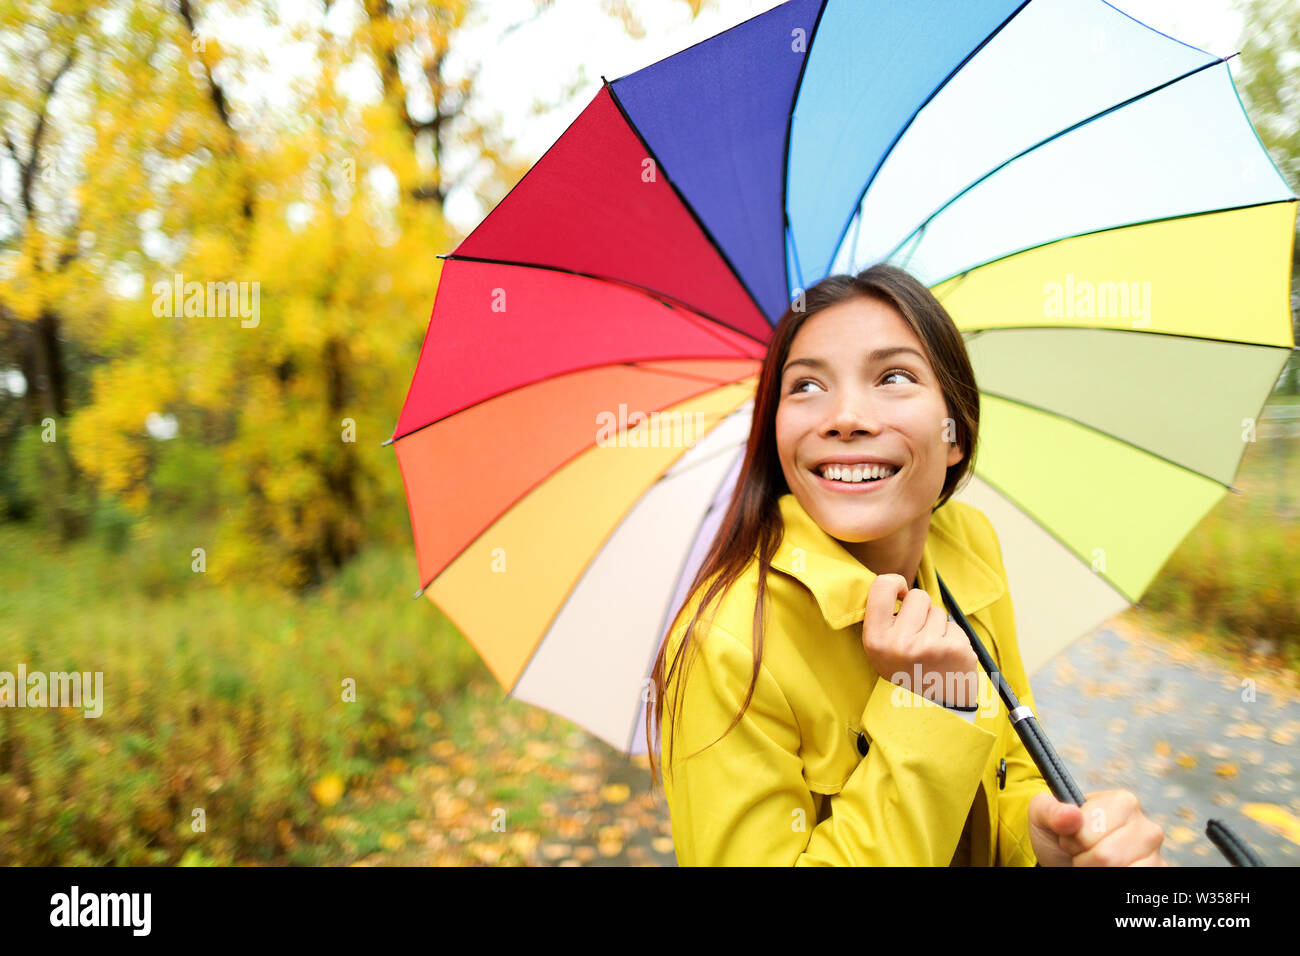 Autunno / autunno - donna felice con ombrello in caso di pioggia a piedi nella foresta. Ragazza godendo di caduta di pioggia giorno guardando lontano sorridente. Razza mista Caucasian / asiatica ragazza cinese. Foto Stock